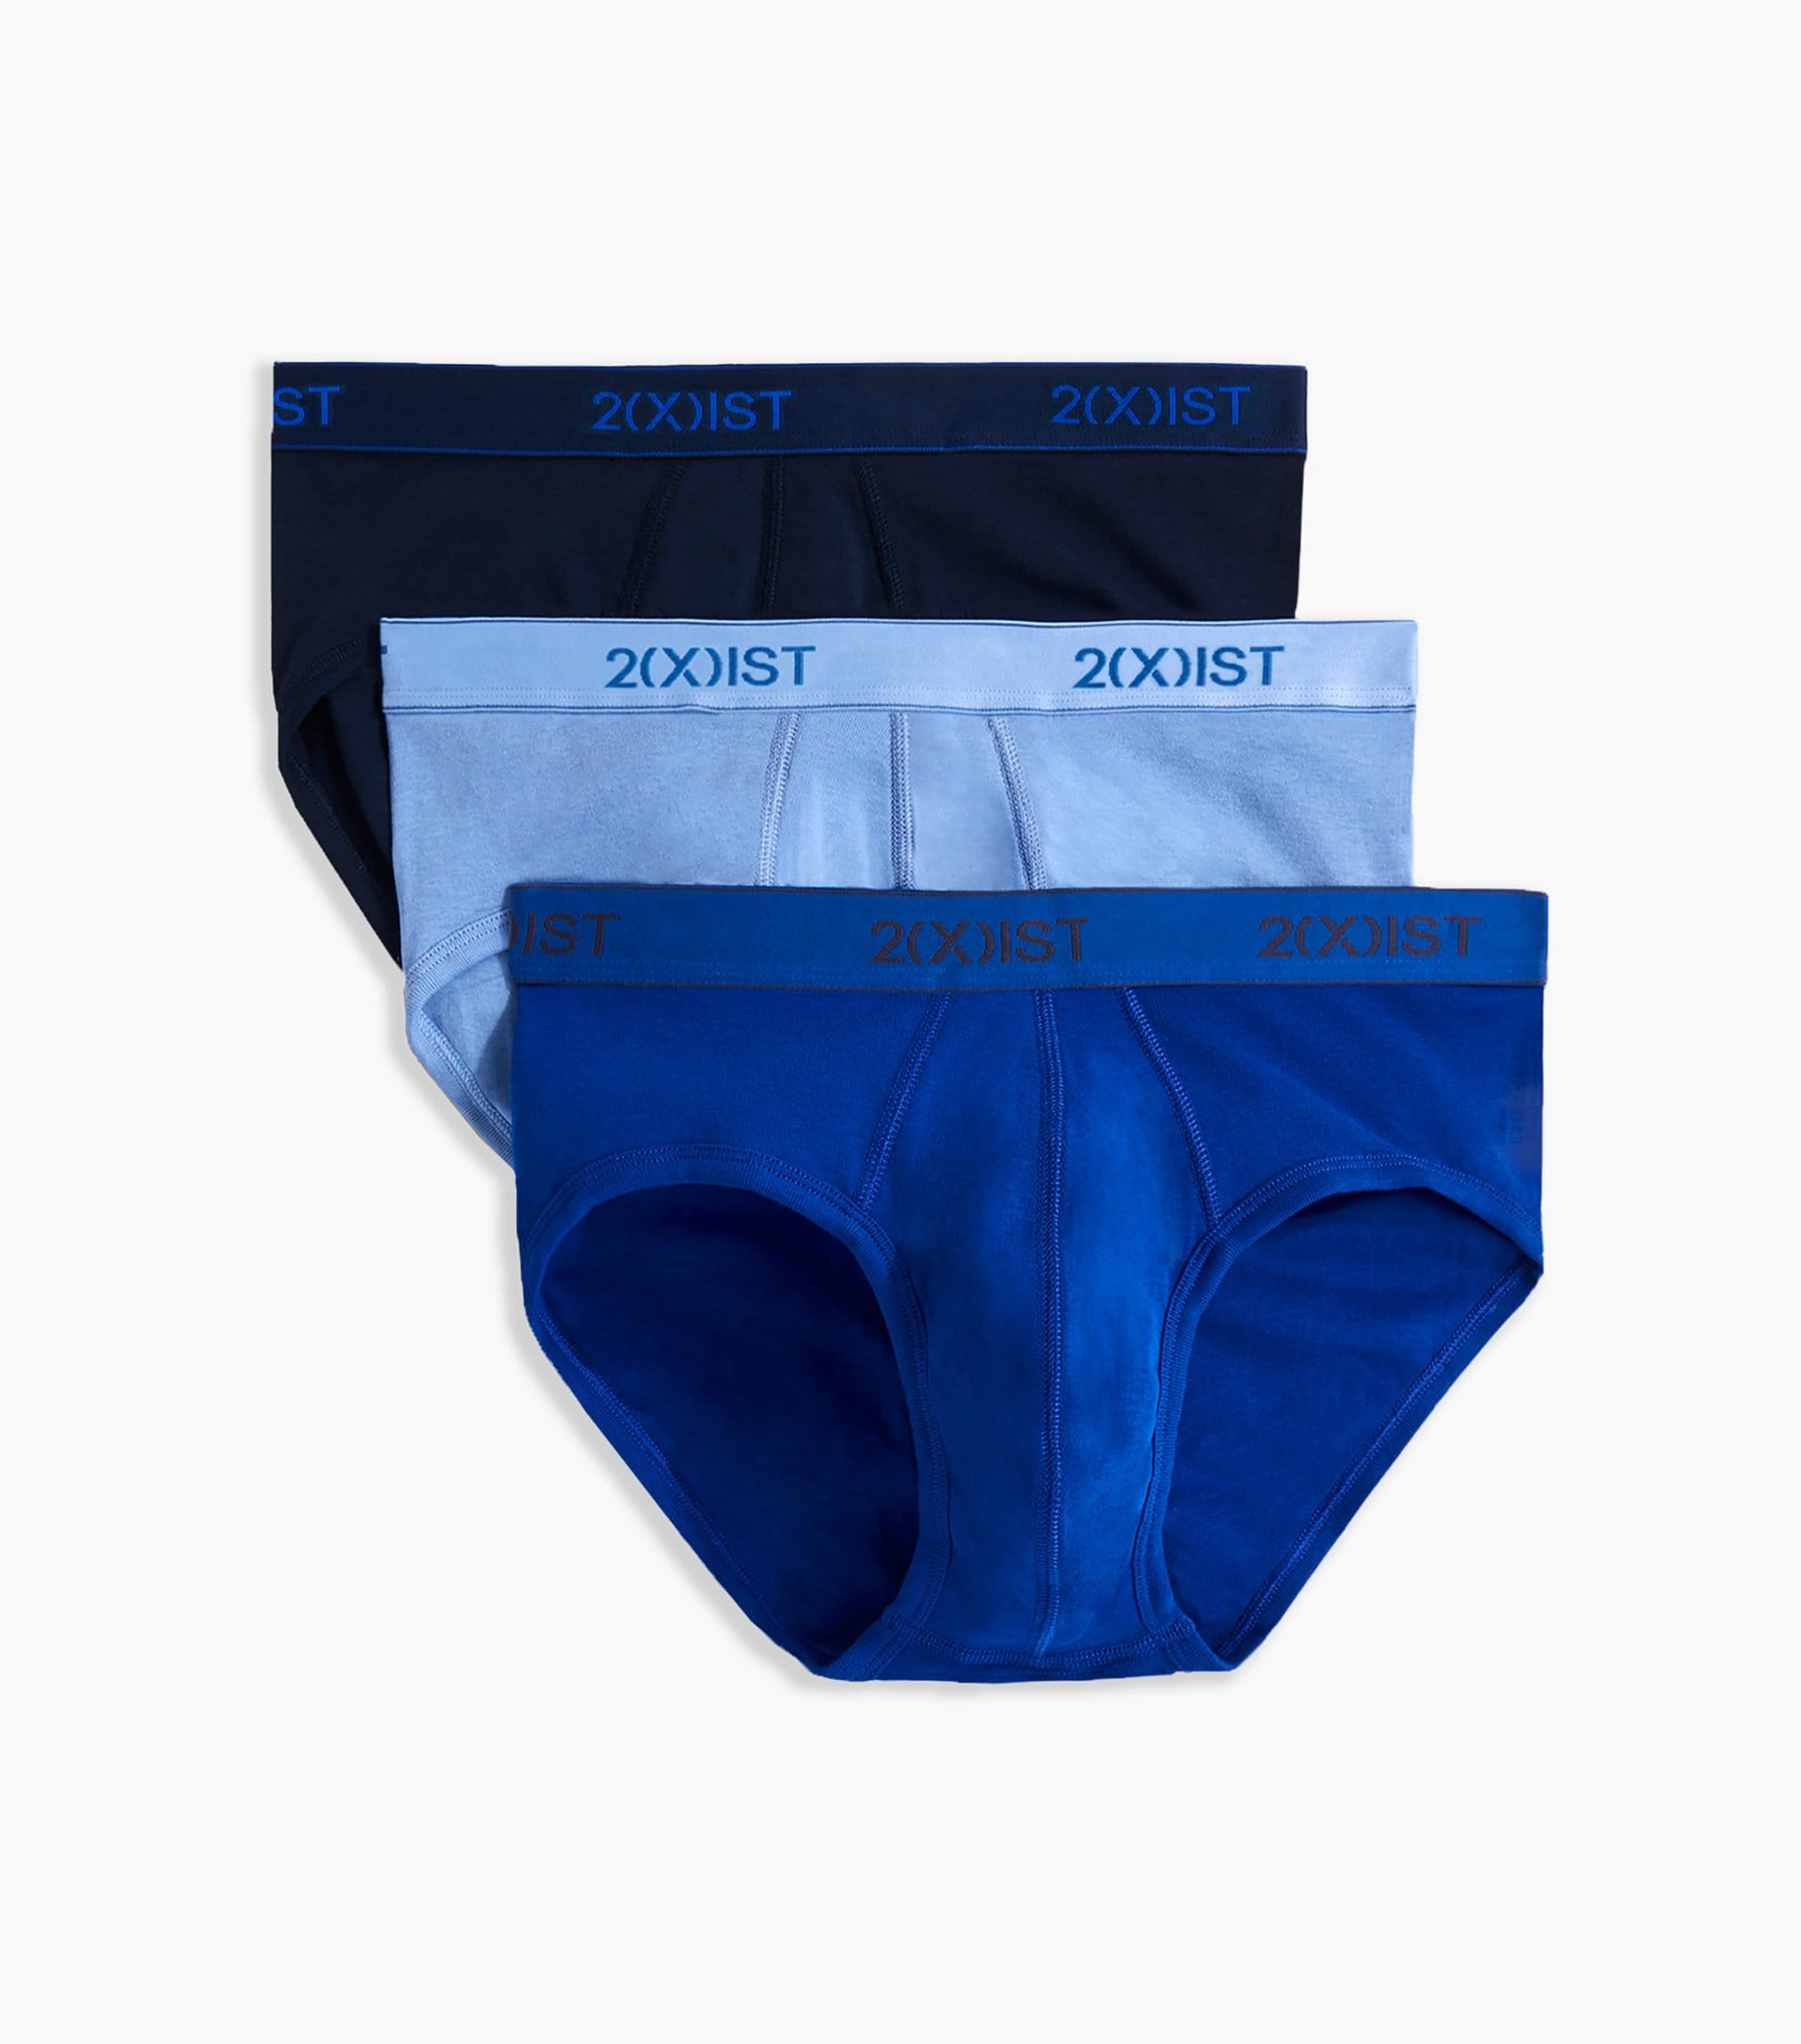 2(x)ist Men's Underwear, Essentials Contour Pouch Brief 3 Pack - Macy's